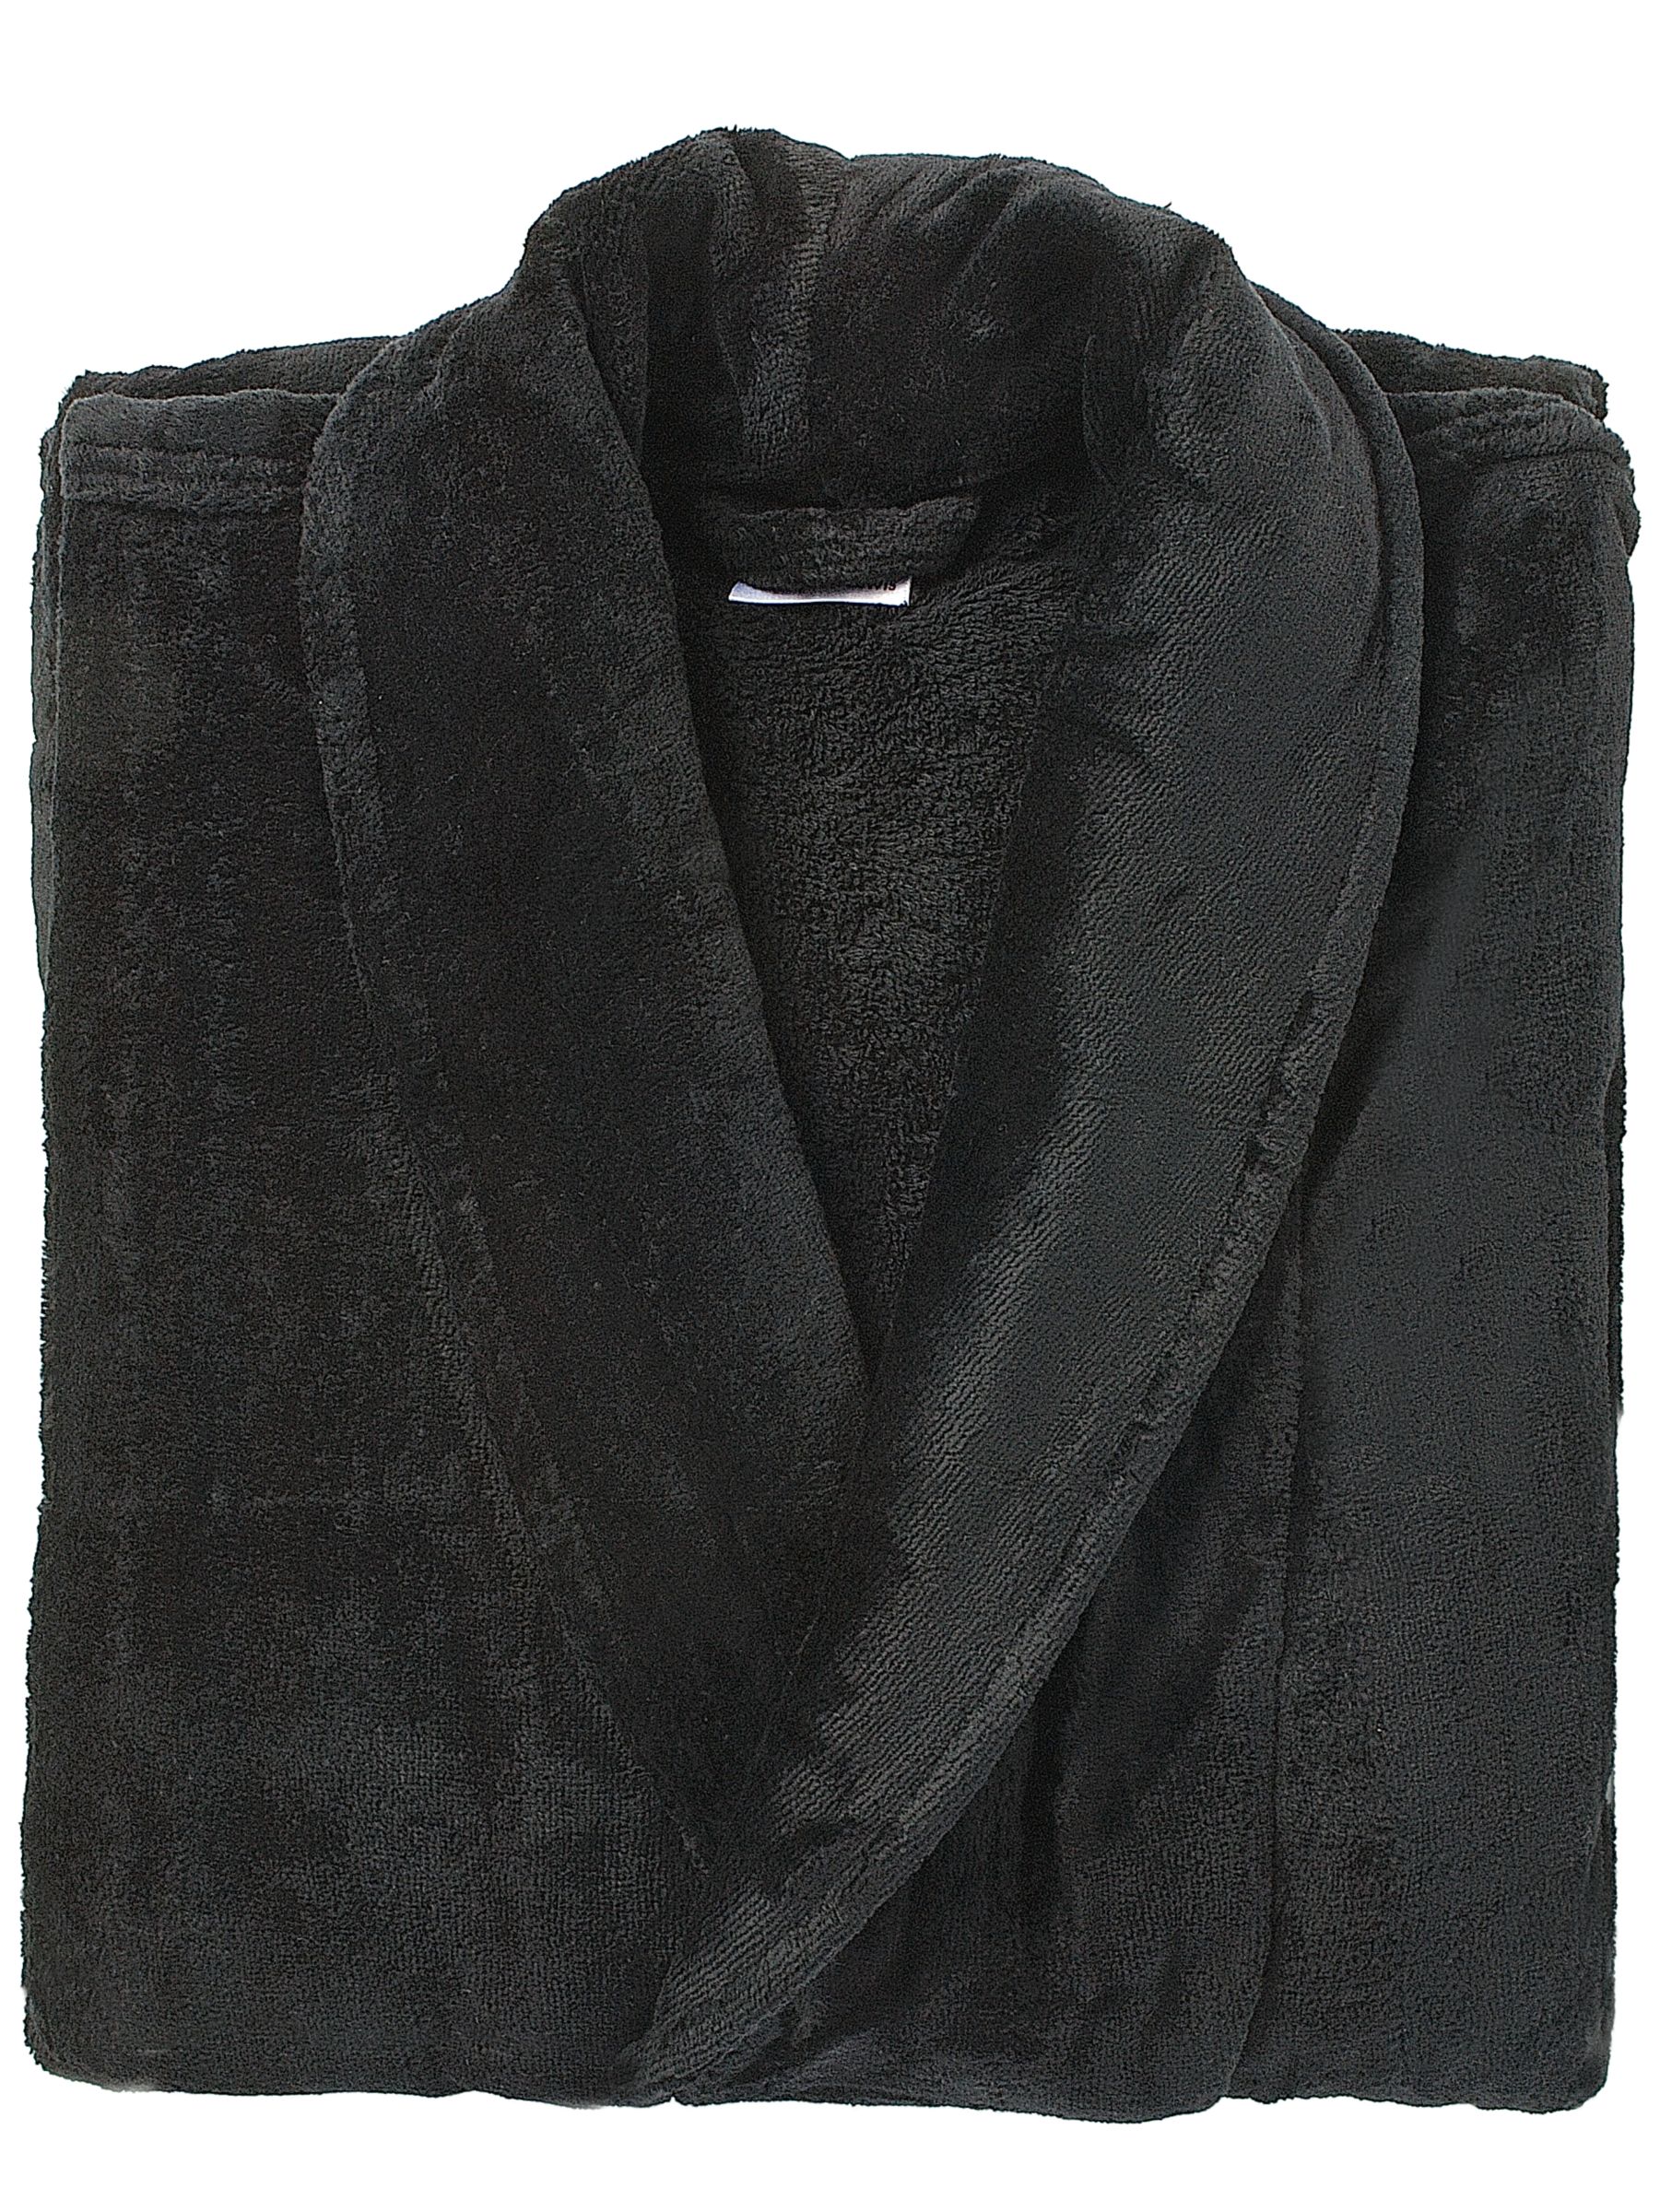 Velour Unisex Bathrobe, Nero, Extra Large, 112-117cm (44-46)